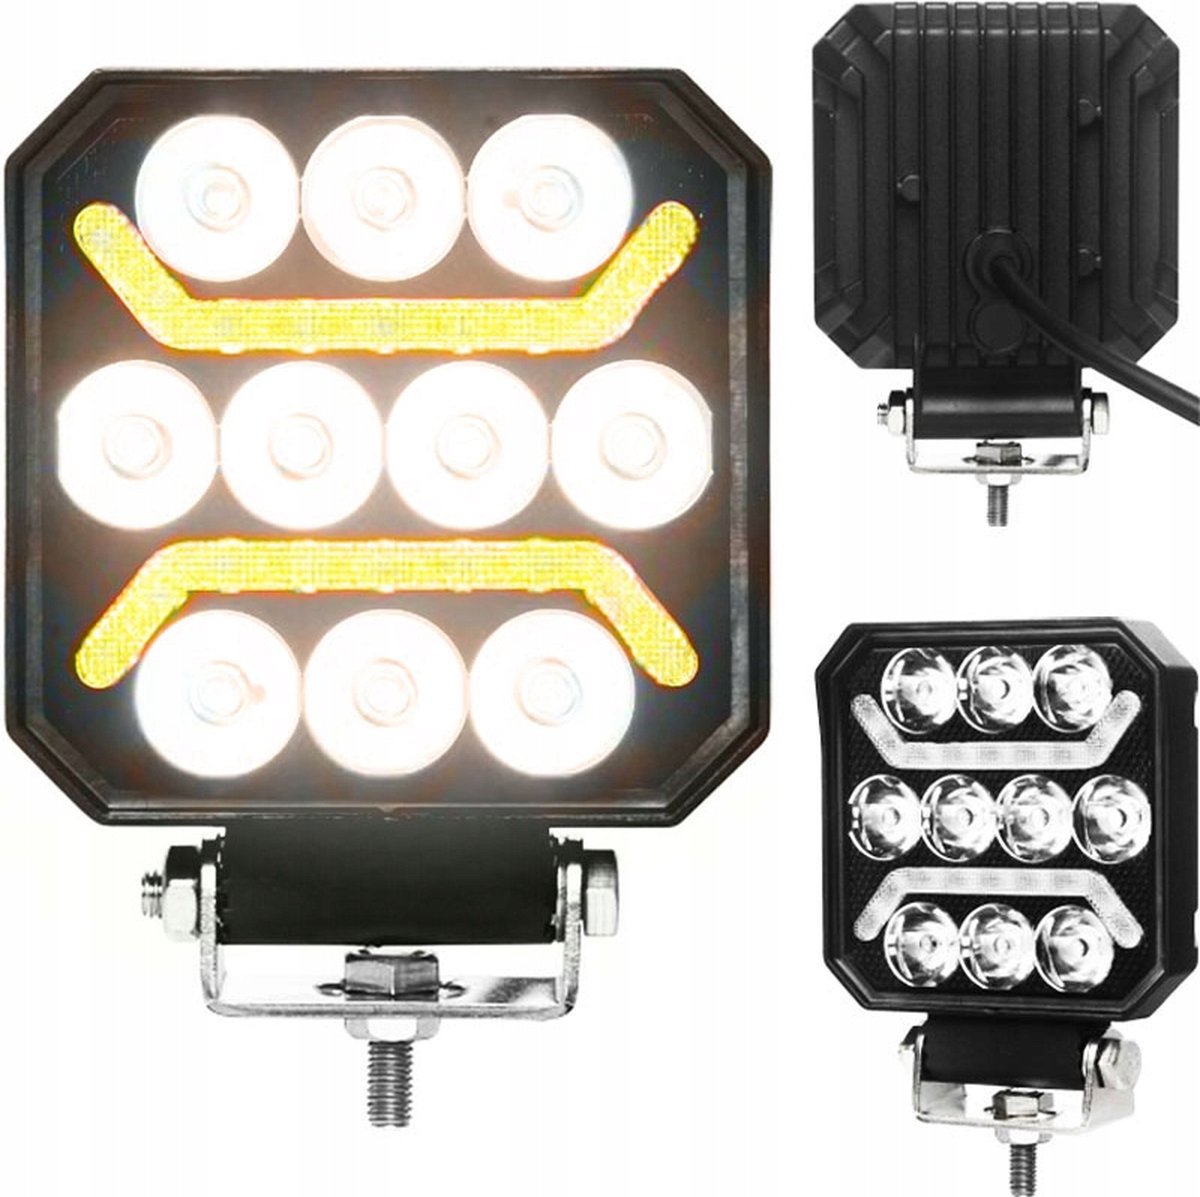 LED werklamp + 2 COB strips - 10 LED - Wit / oranje - 1500 Lumen